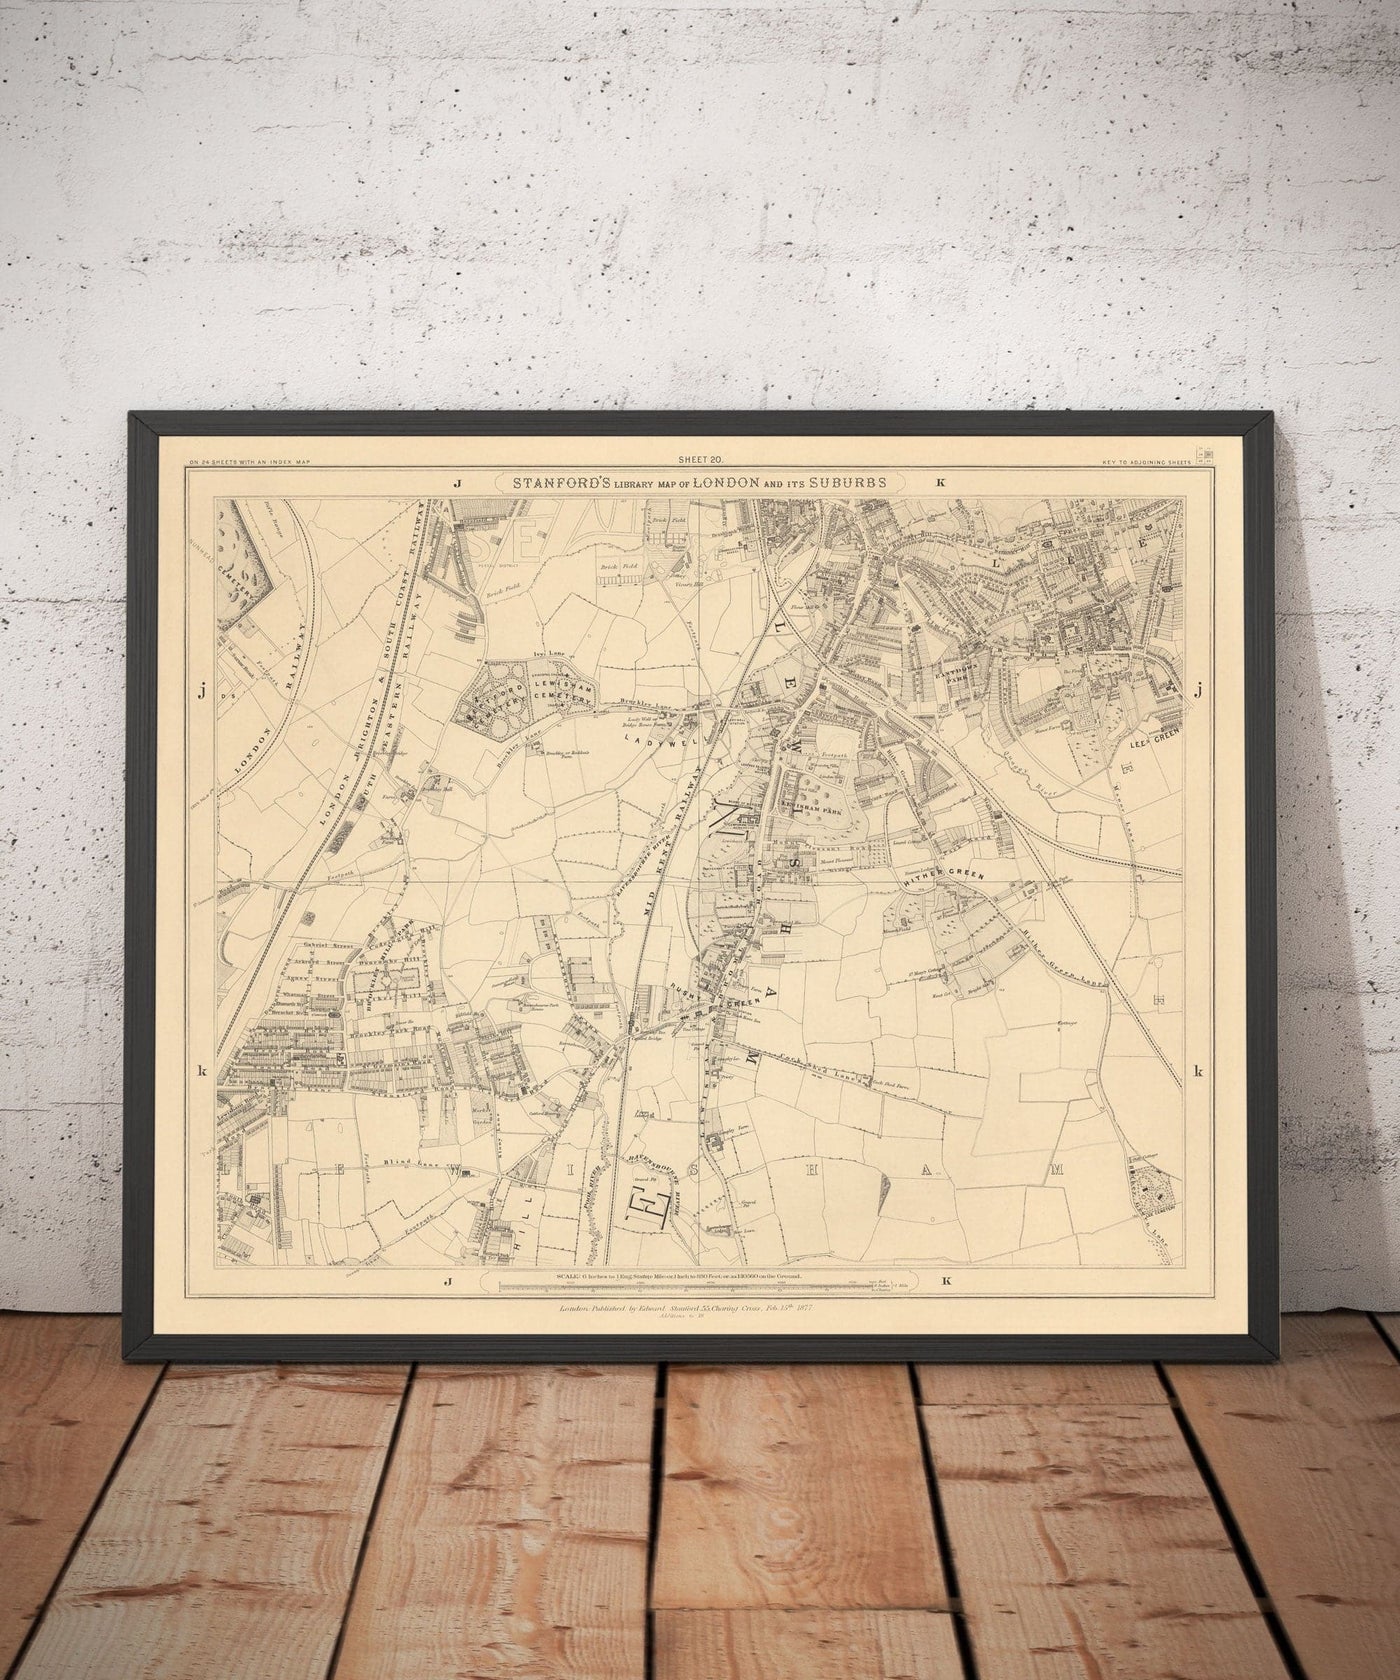 Viejo Mapa del Sureste de Londres por Edward Stanford, 1862 - Lewisham, Ladywell, Brockley, Catford - SE4, SE13, SE23, SE6